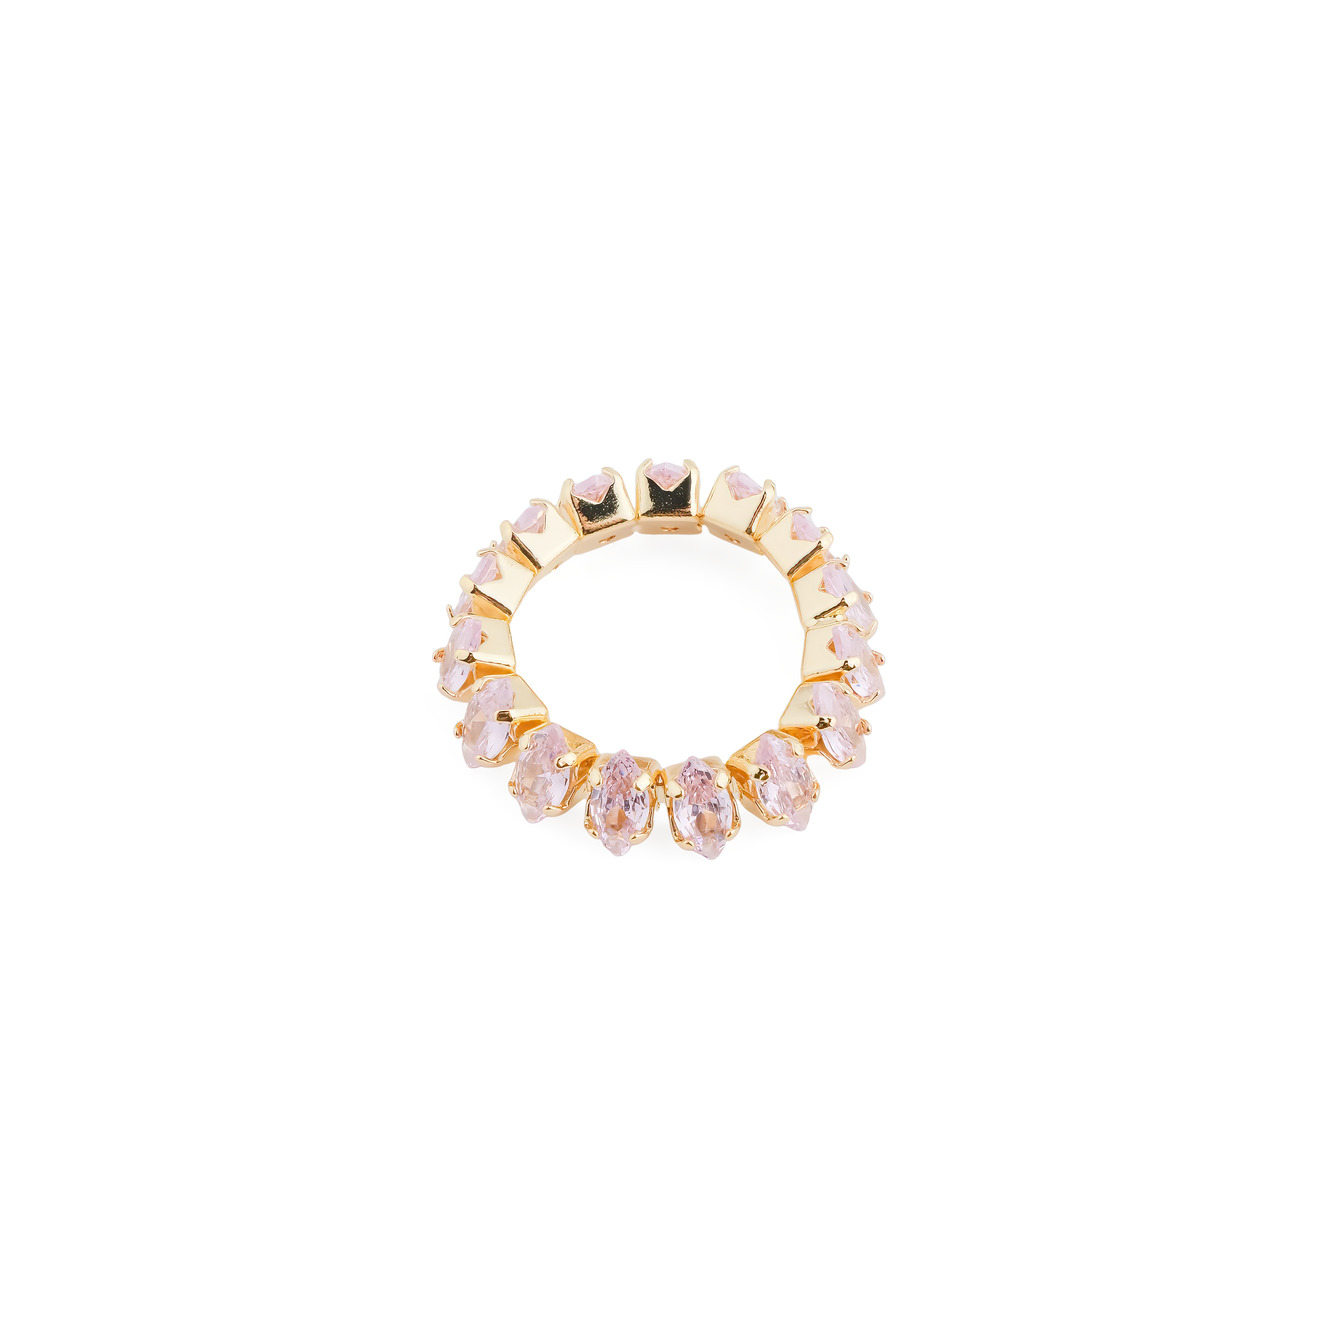 Herald Percy Кольцо с розовыми кристаллами herald percy золотистое фигурное кольцо с зеленым сердцем